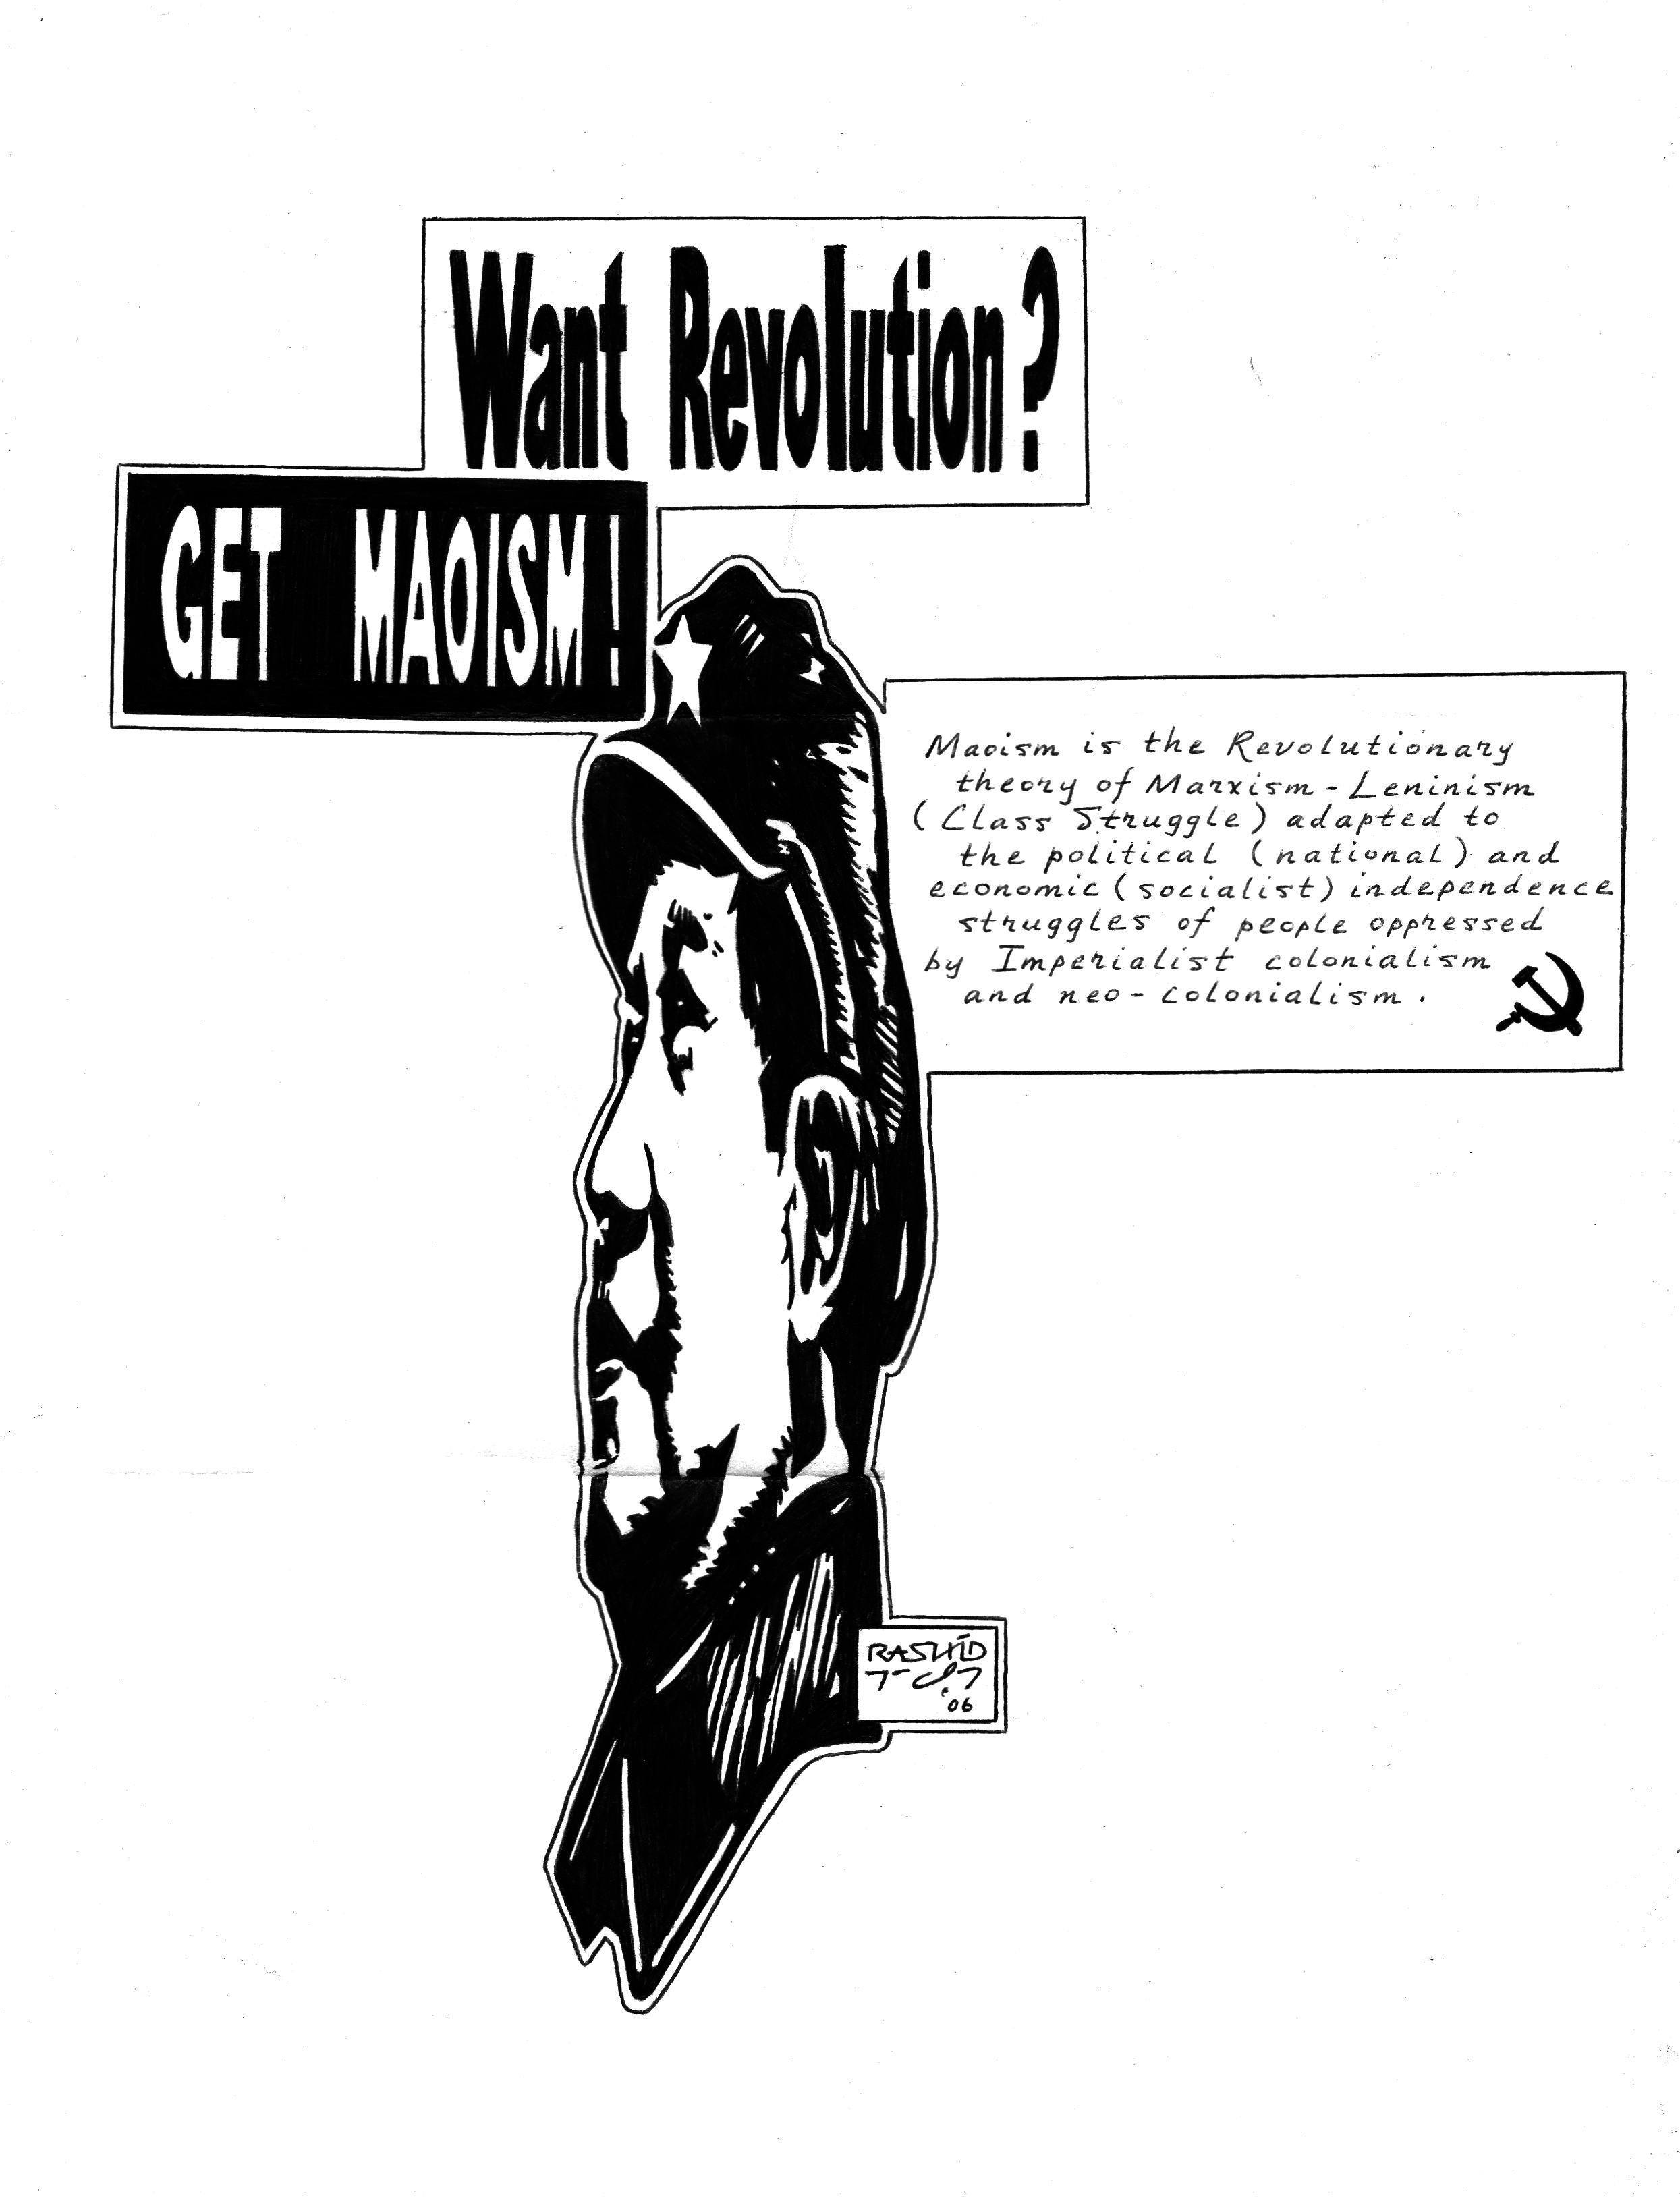 Get Maoism!